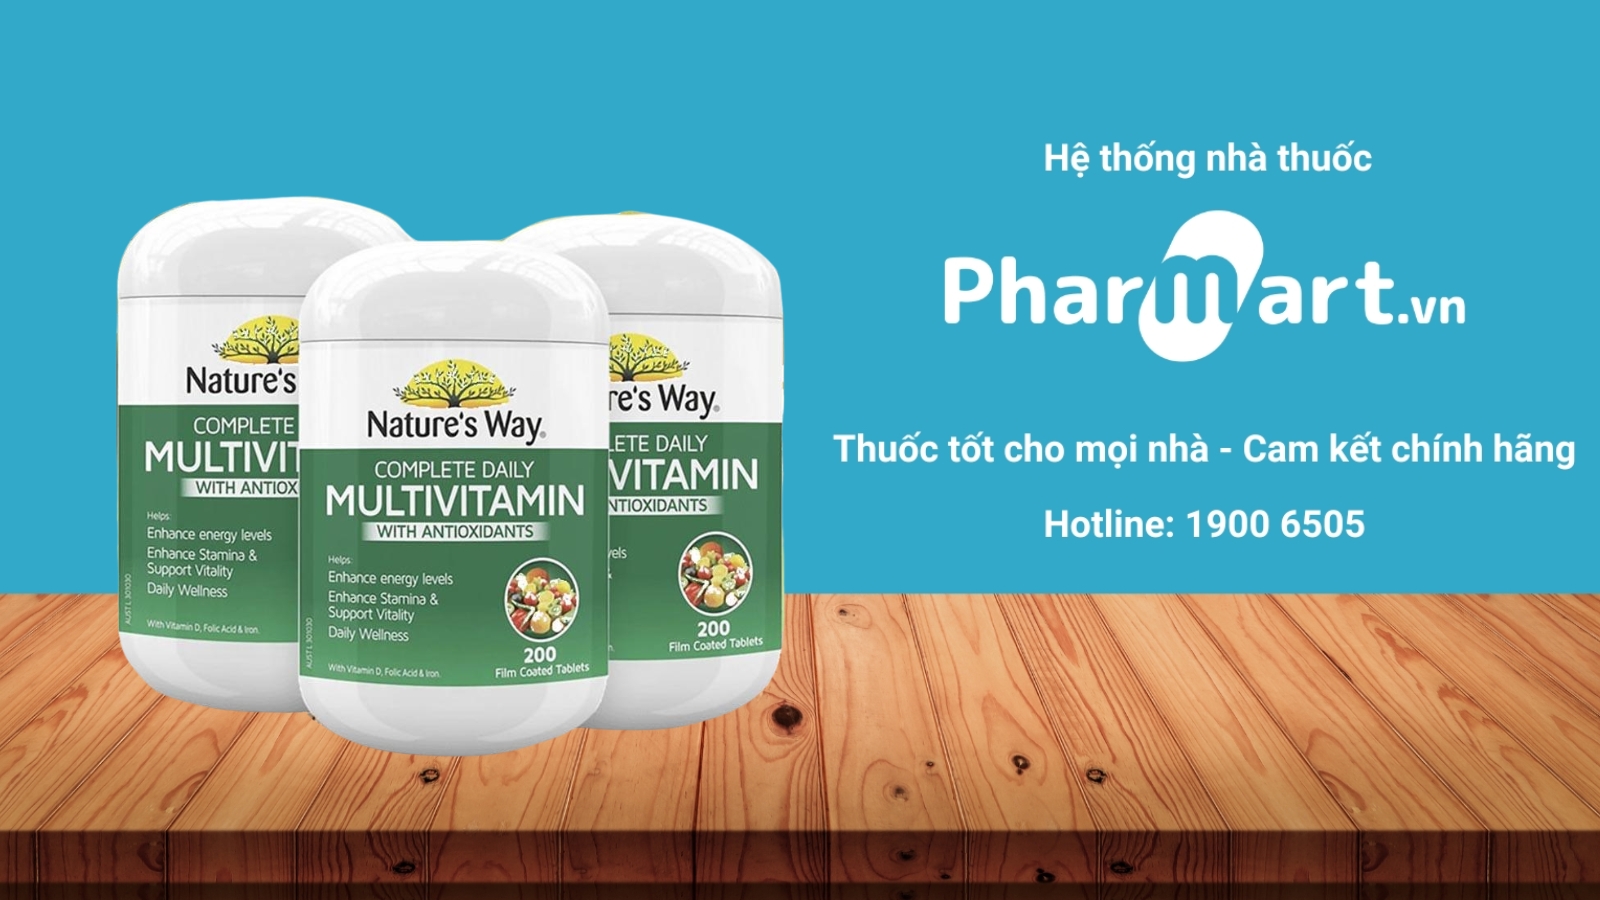 Pharmart.vn chuyên cung cấp sản phẩm chính hãng và uy tín